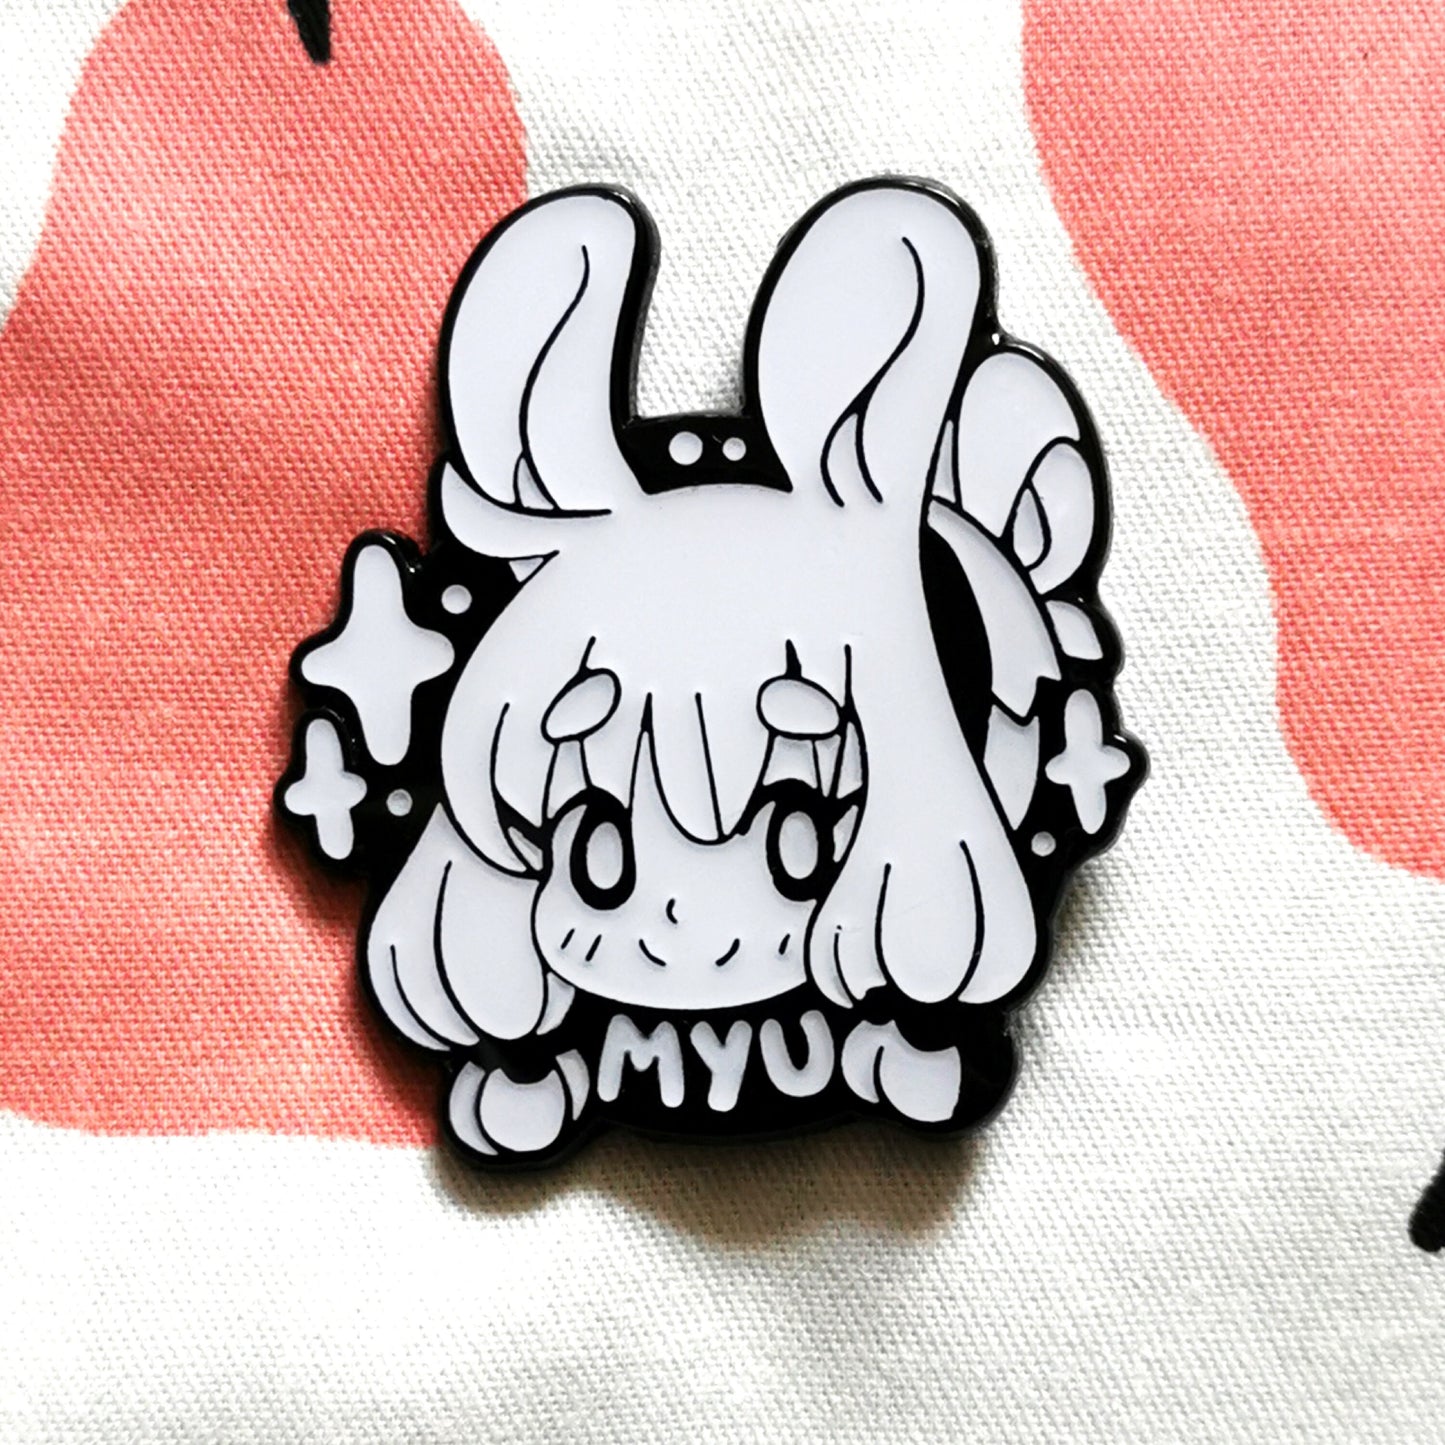 Ayumi OC Hard Enamel Pin - Cute Original Art Pin